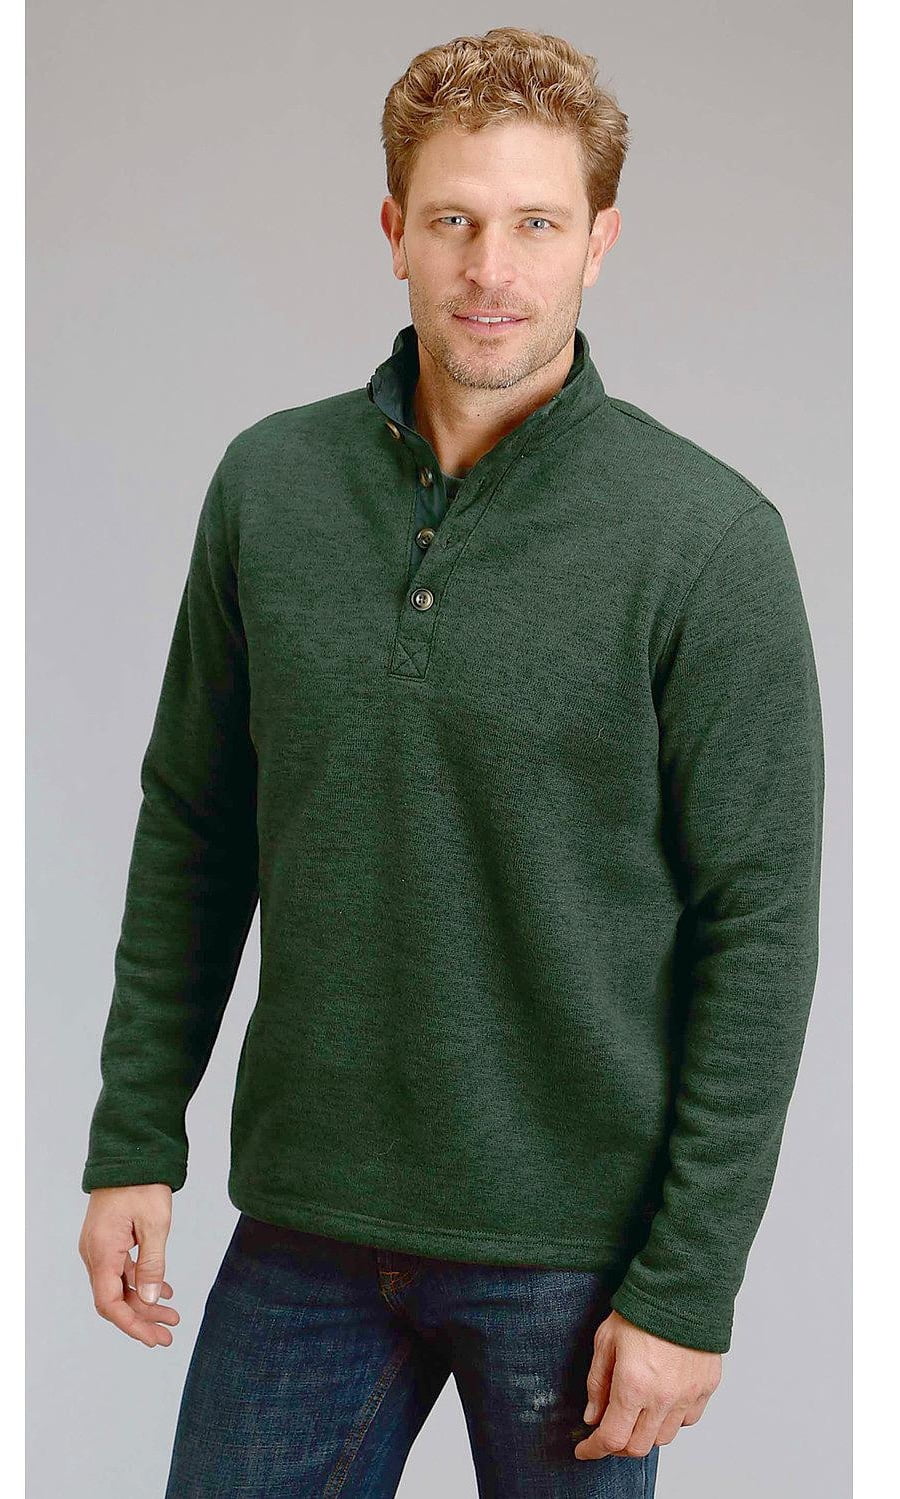 Stetson Men's Green 1/4 Button Front Sweater - 11-014-0120-0692 Gr ...